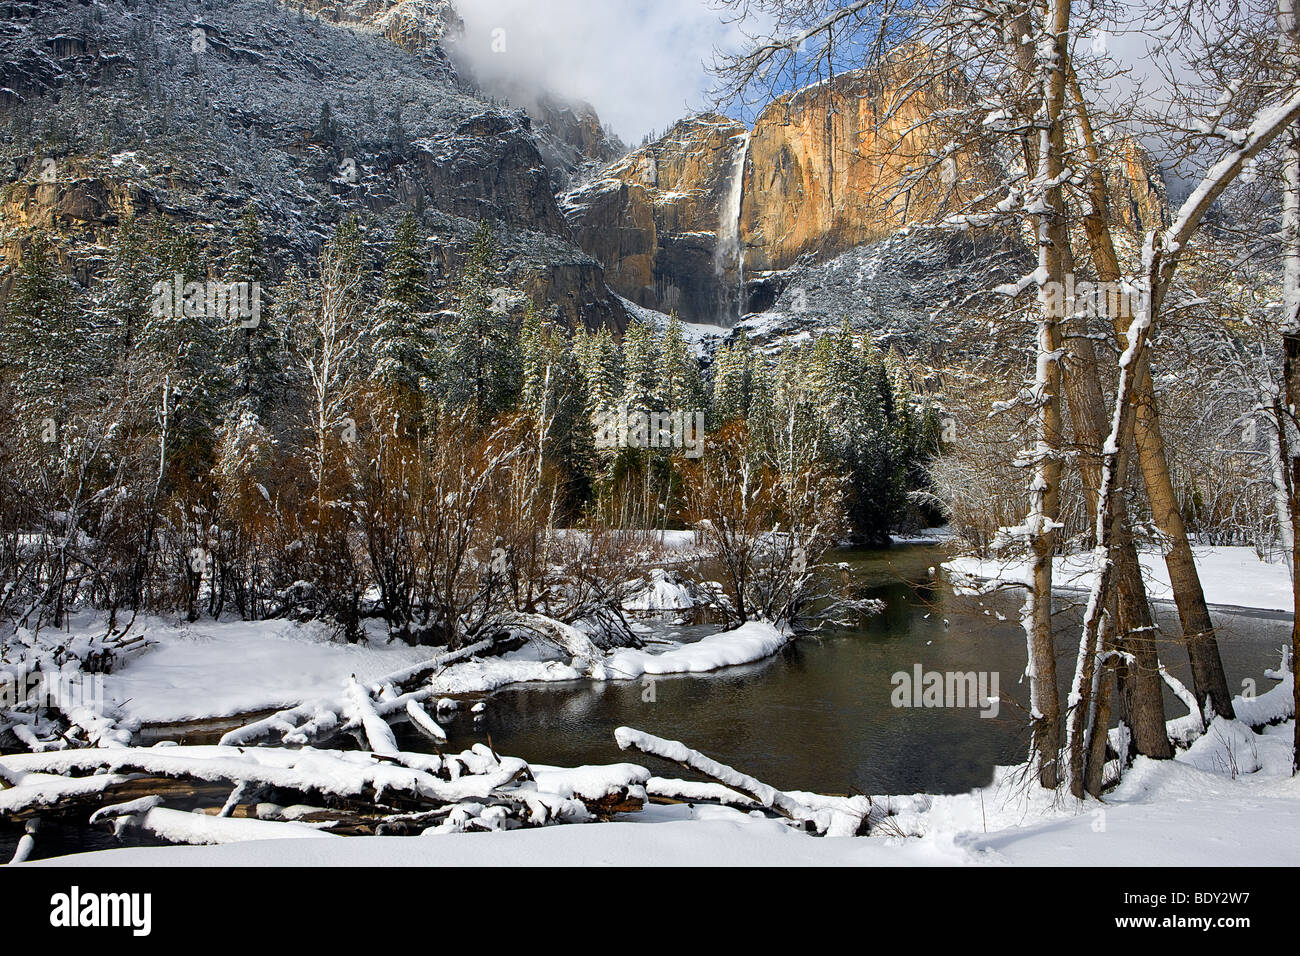 La rivière Merced Yosemite passé vents il way Falls après une tempête hivernale de compensation. Yosemite National Park, California, USA. Banque D'Images